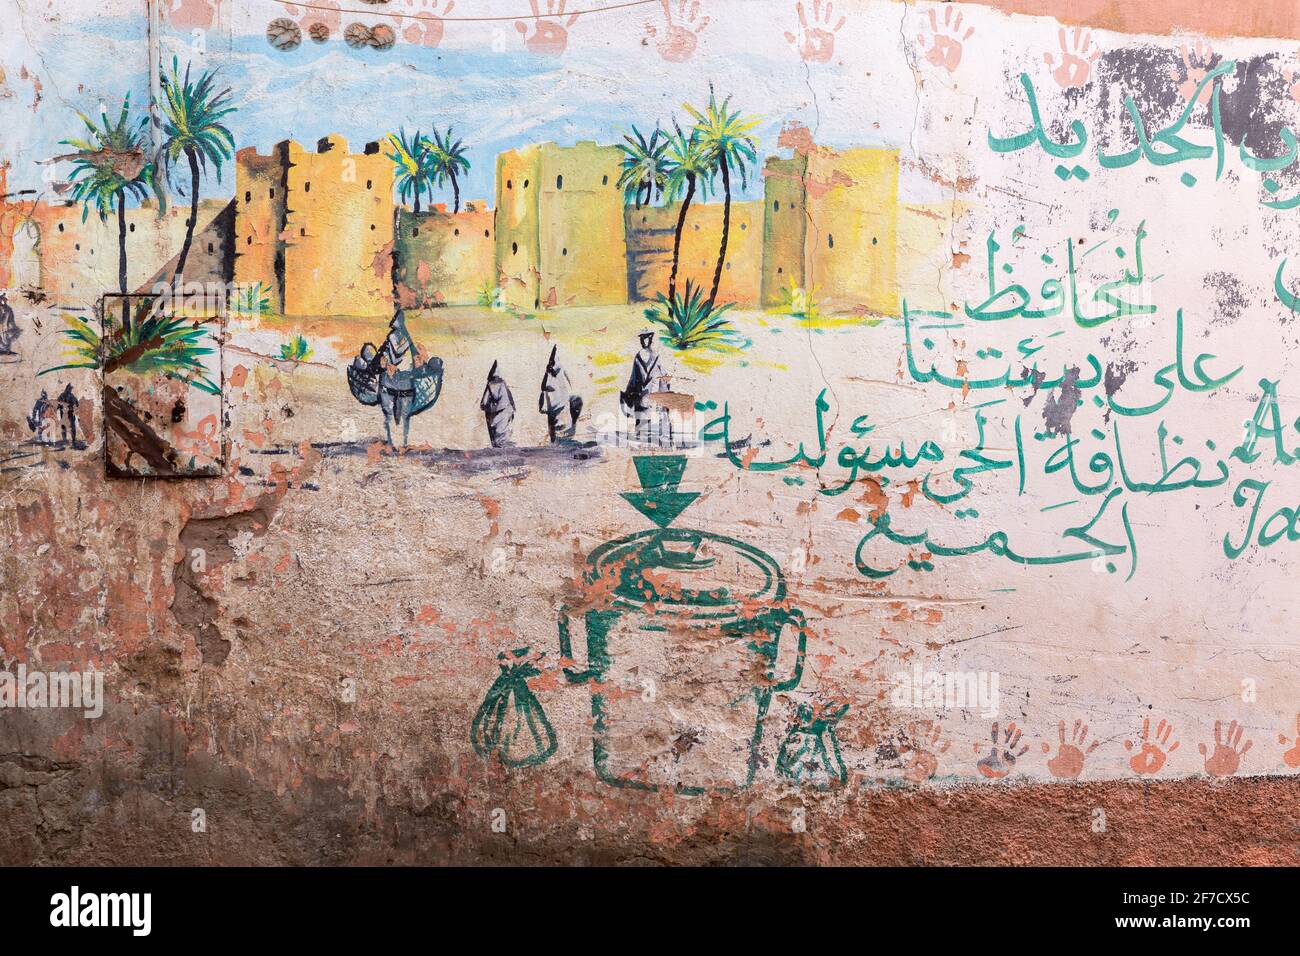 Peinture sur un mur dans la médina de Marrakech, Maroc Banque D'Images